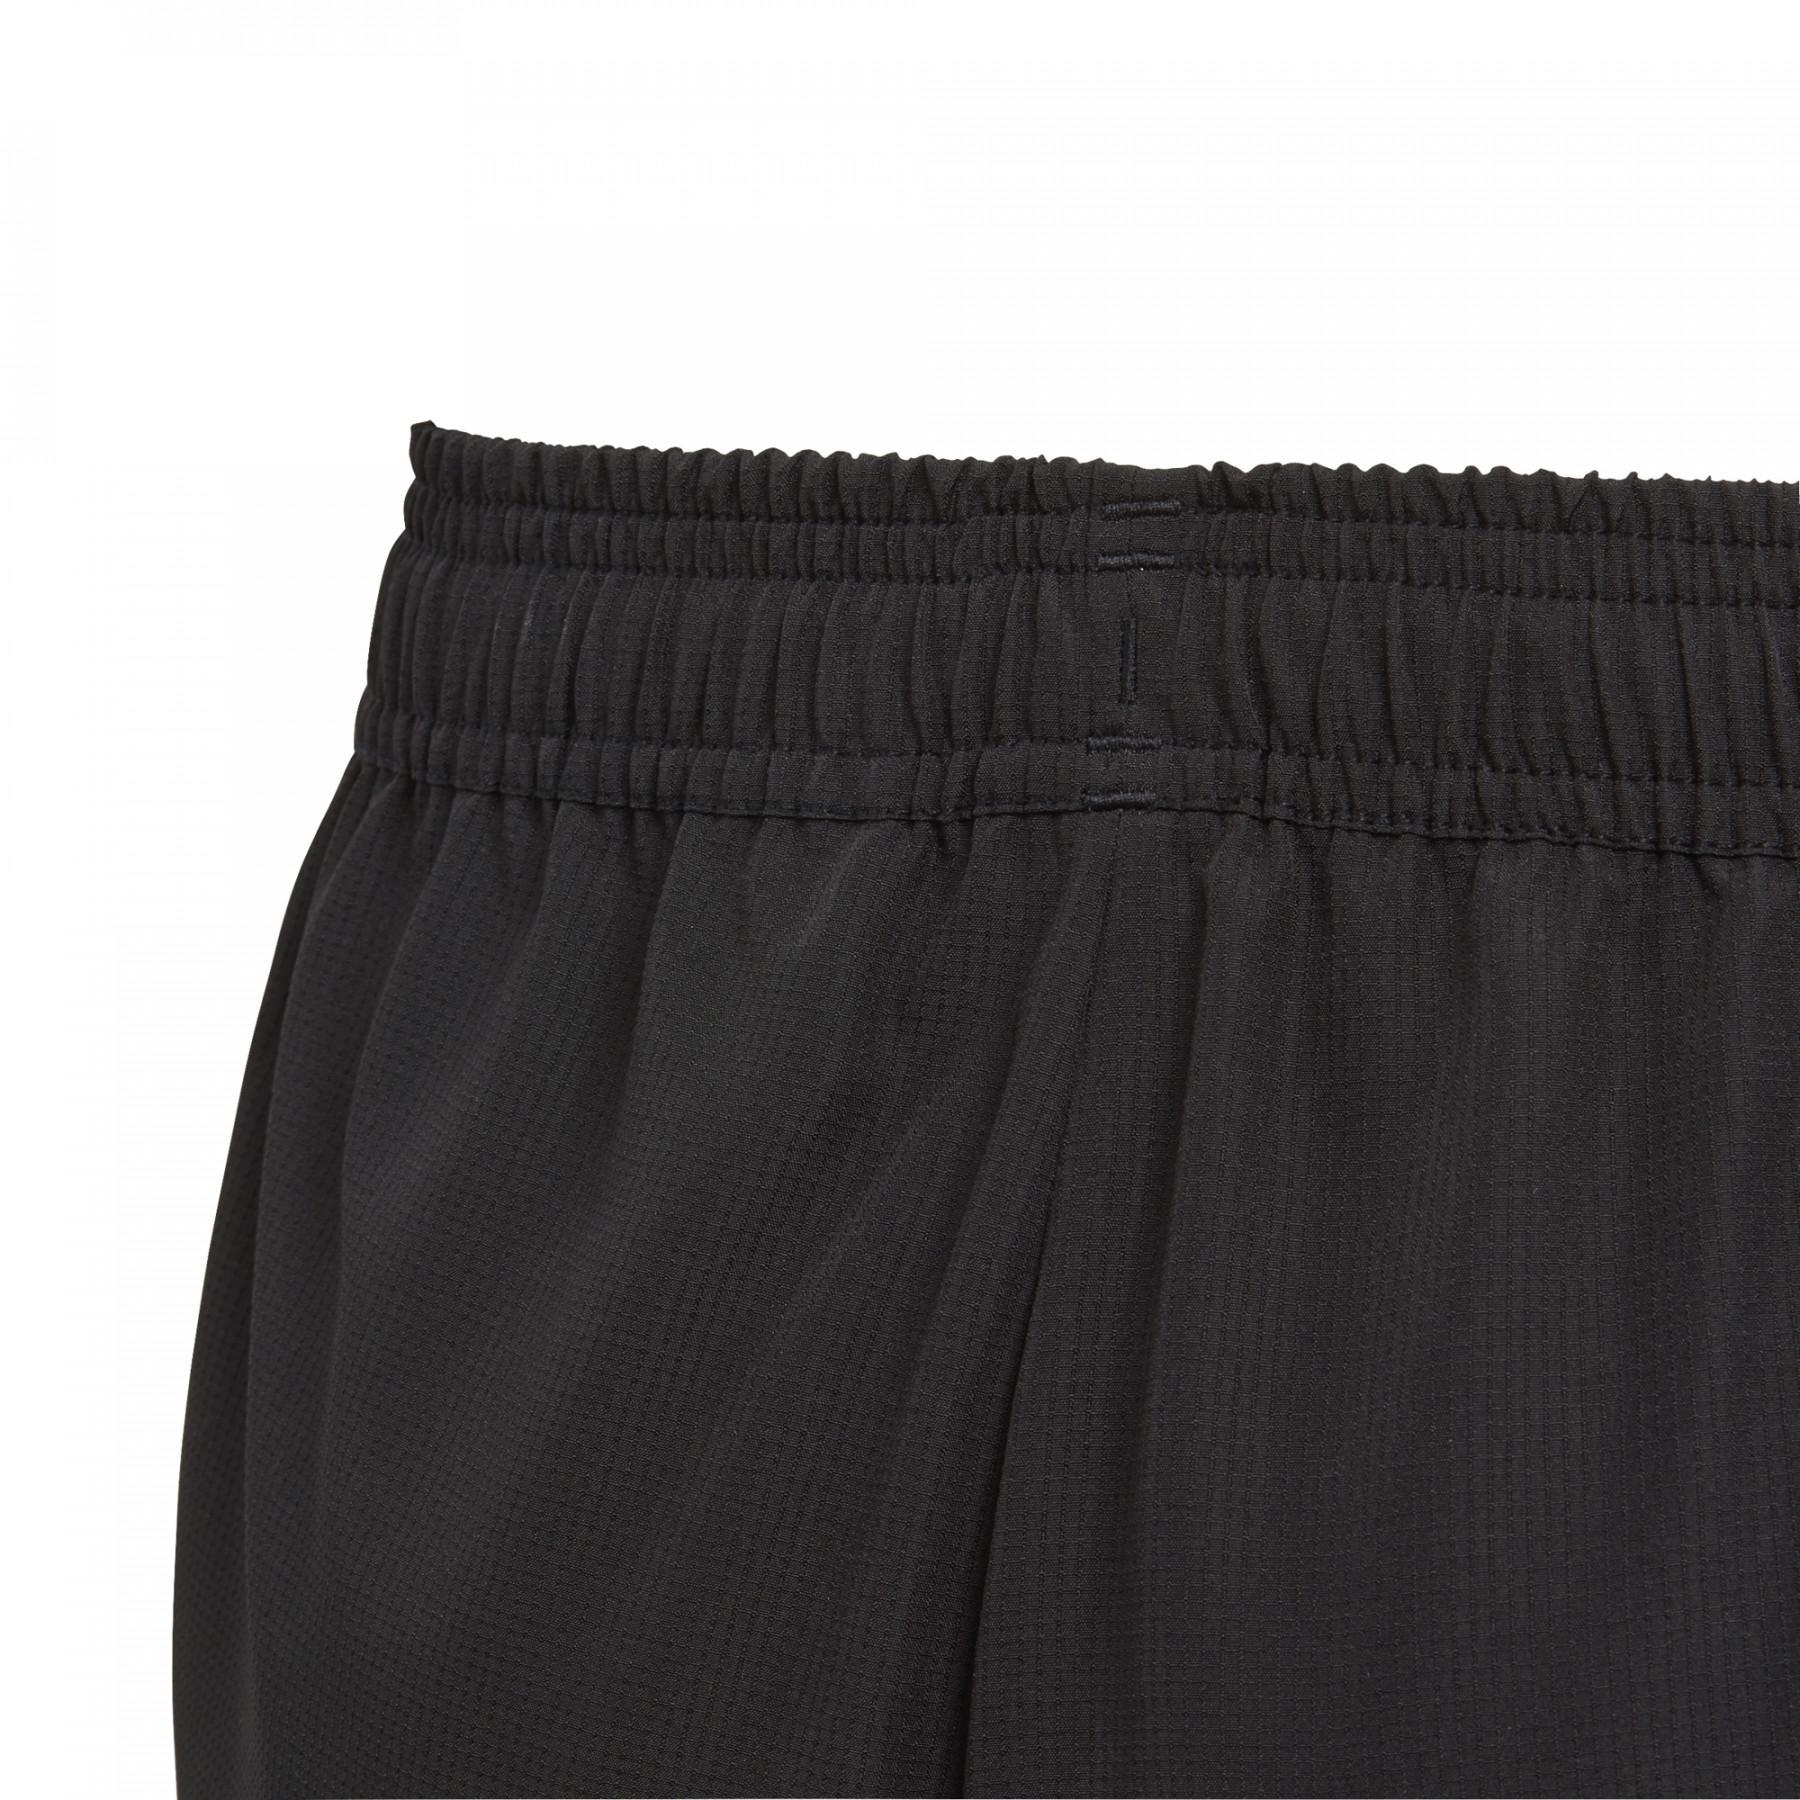 Pantalones cortos para niños adidas Tiro 19